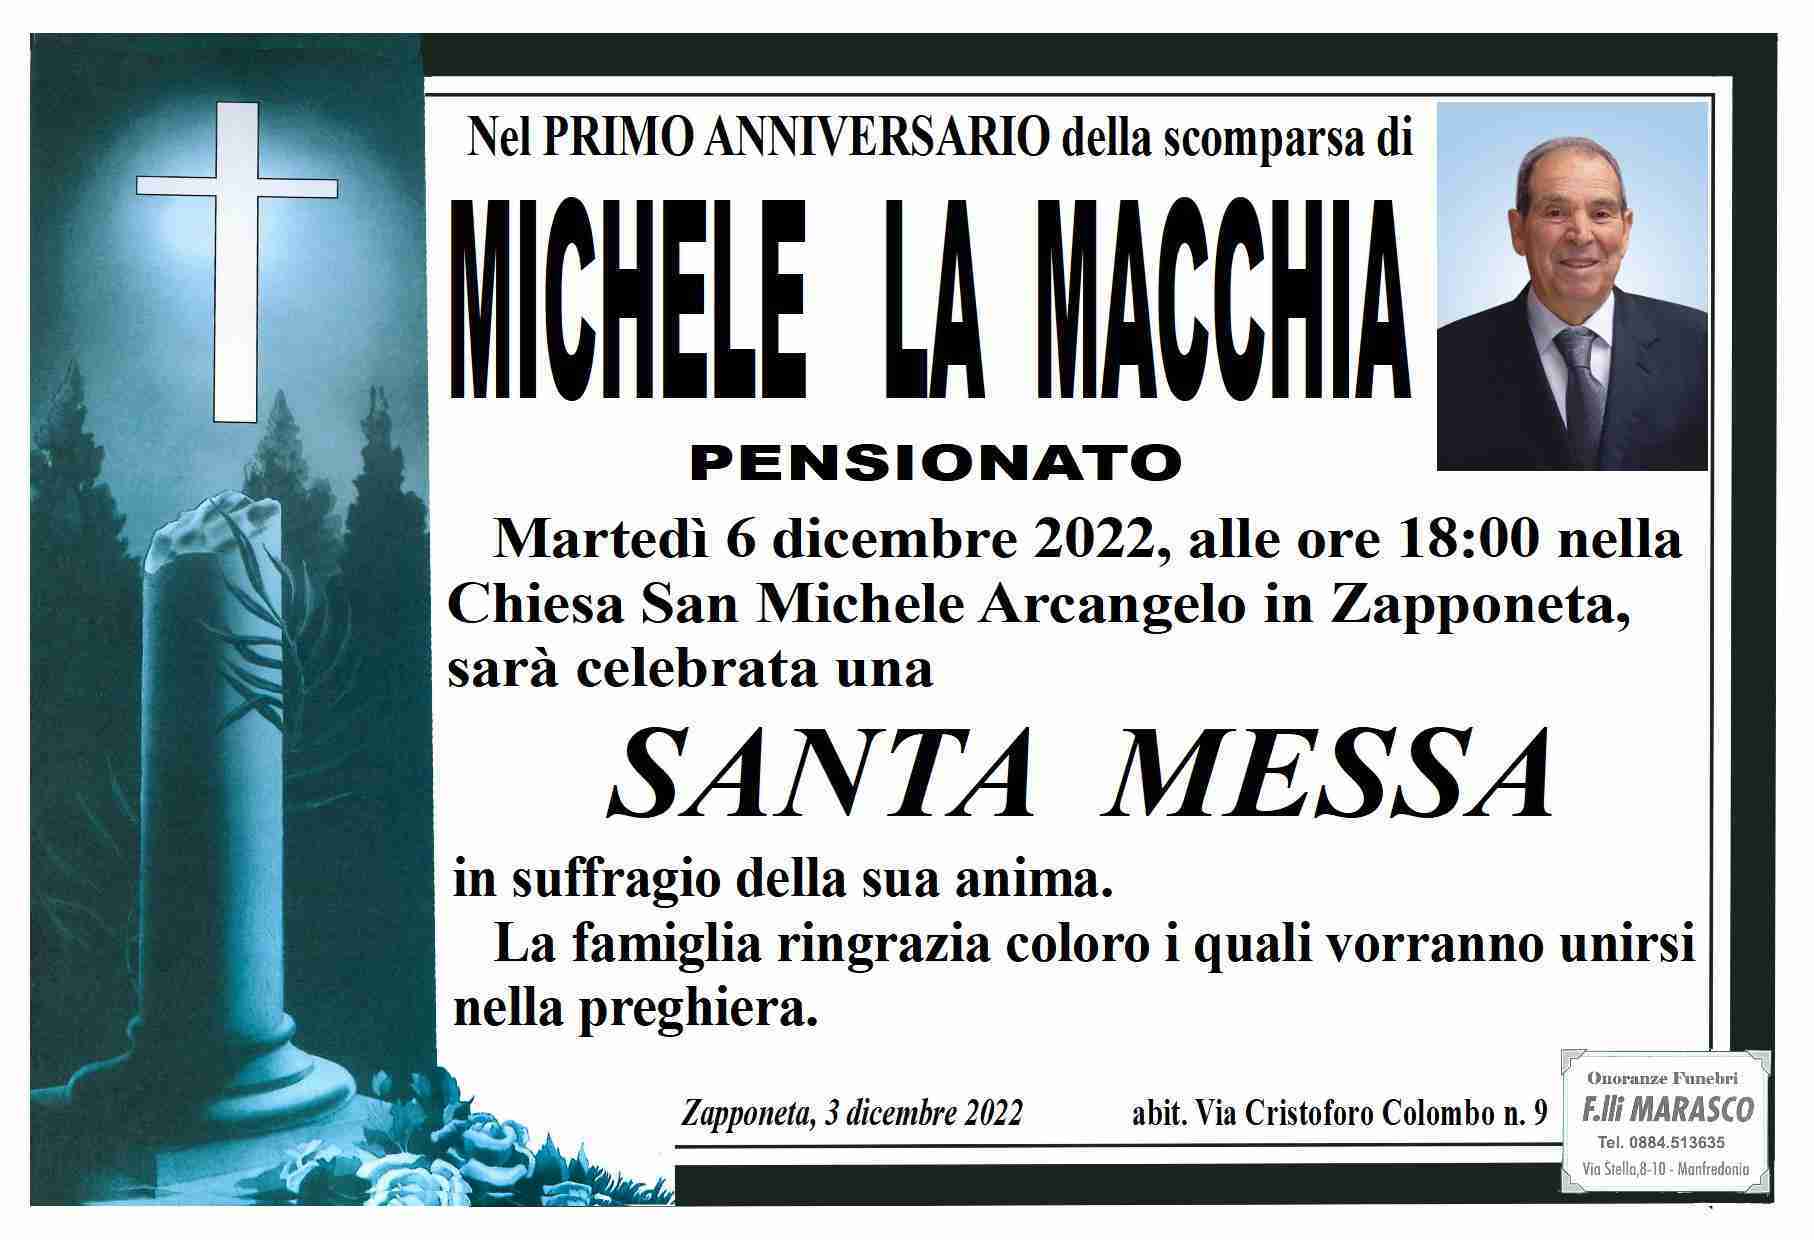 Michele La Macchia